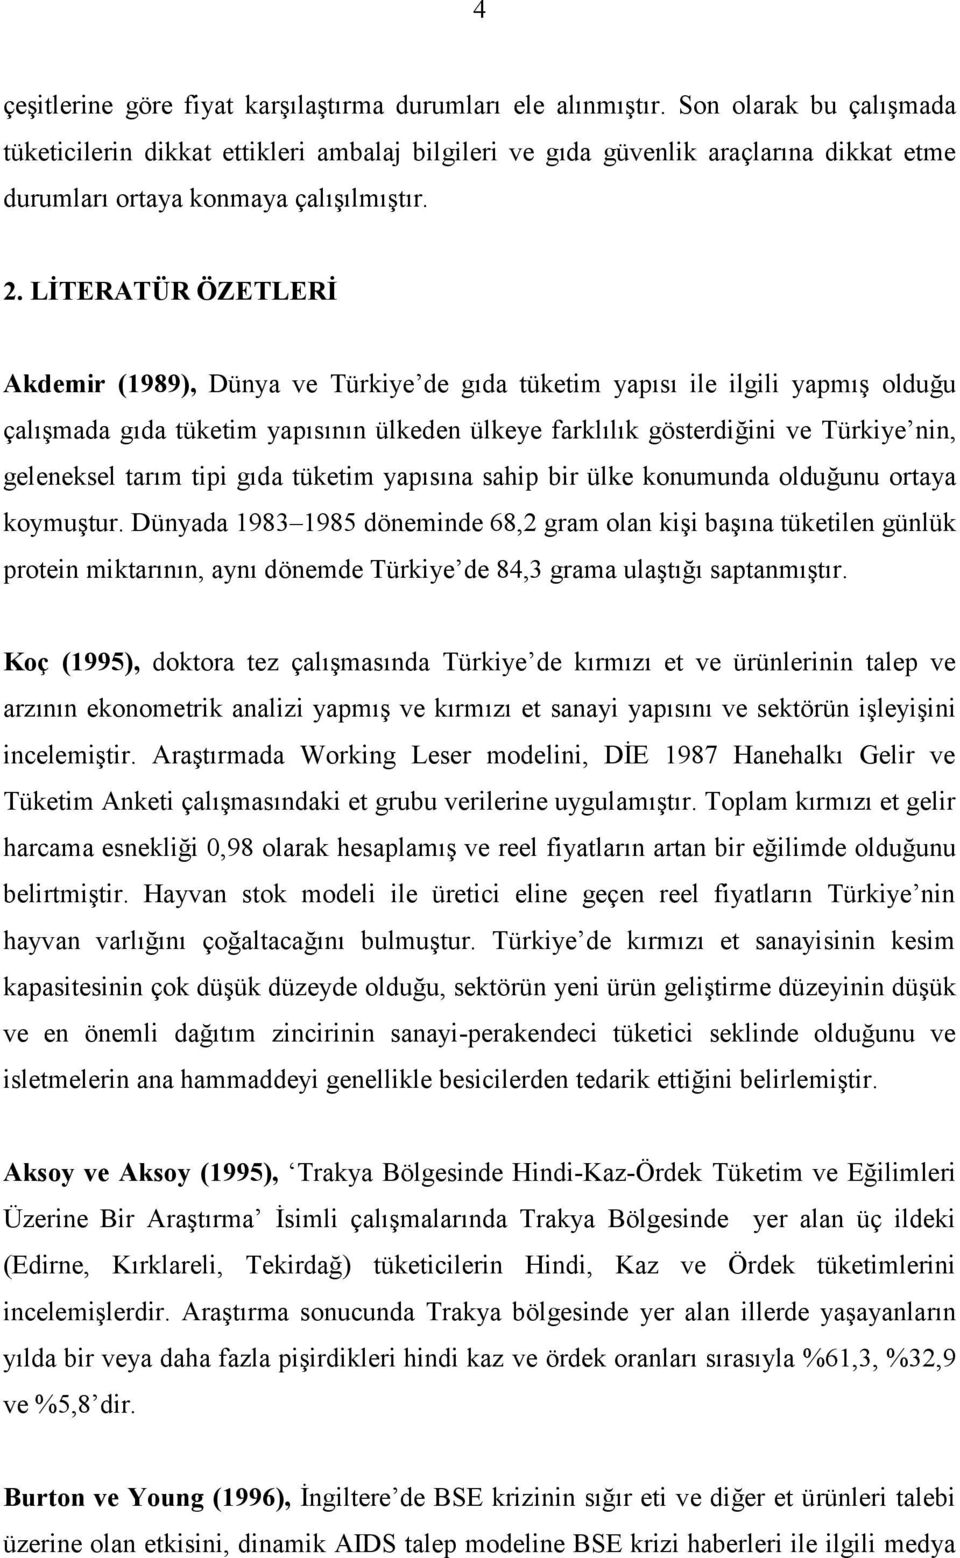 LİTERATÜR ÖZETLERİ Akdemir (1989), Dünya ve Türkiye de gıda tüketim yapısı ile ilgili yapmış olduğu çalışmada gıda tüketim yapısının ülkeden ülkeye farklılık gösterdiğini ve Türkiye nin, geleneksel